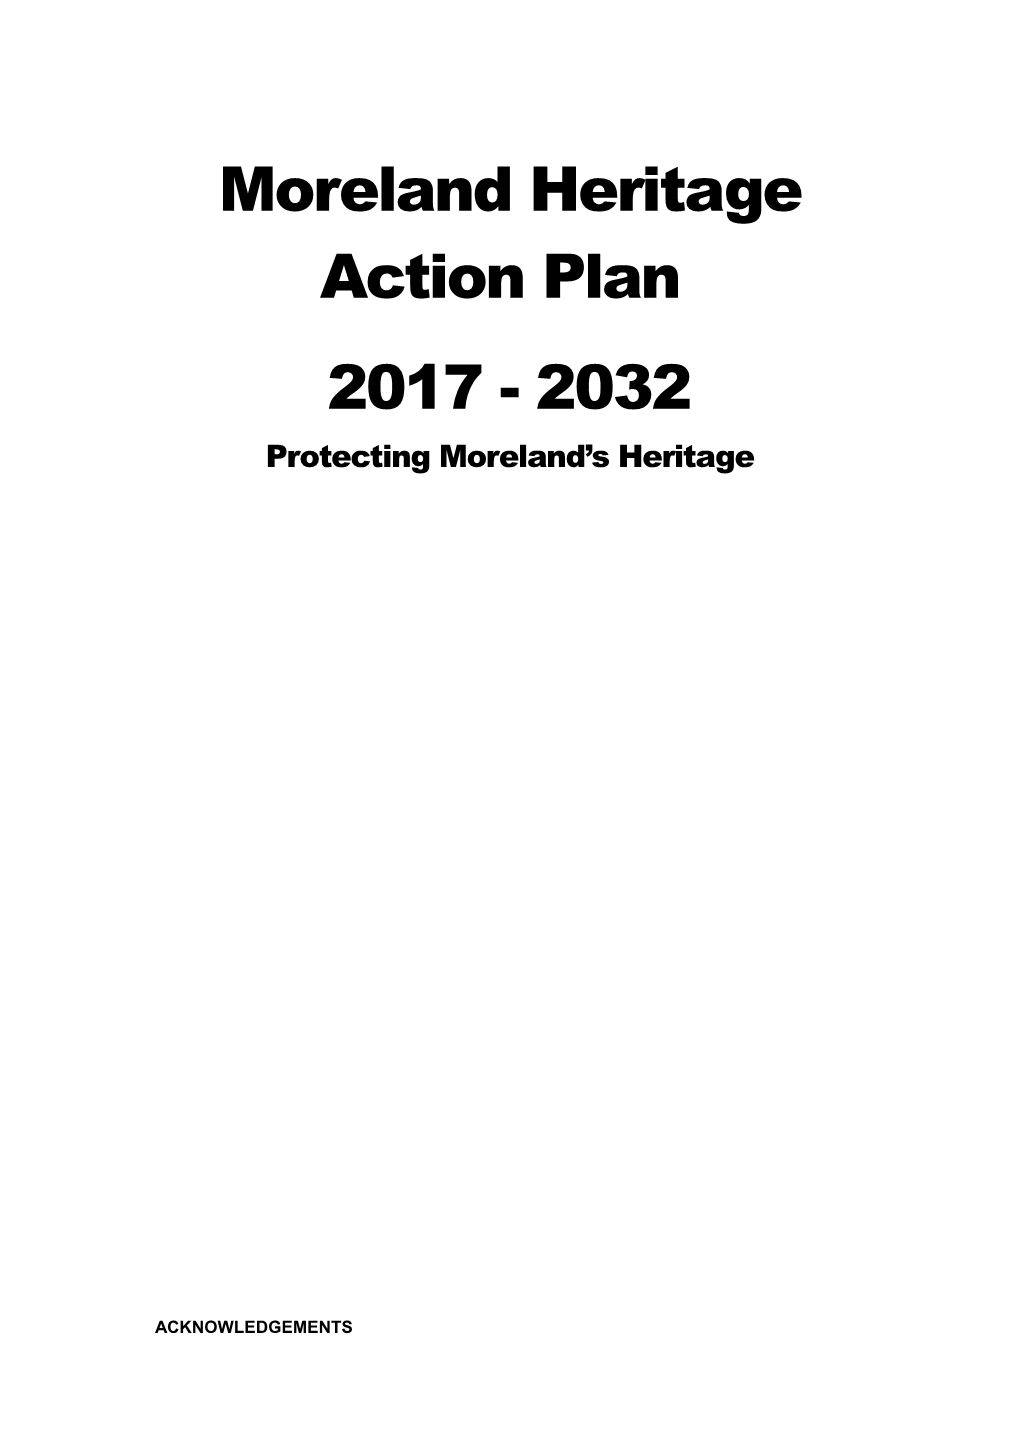 Moreland Heritage Action Plan